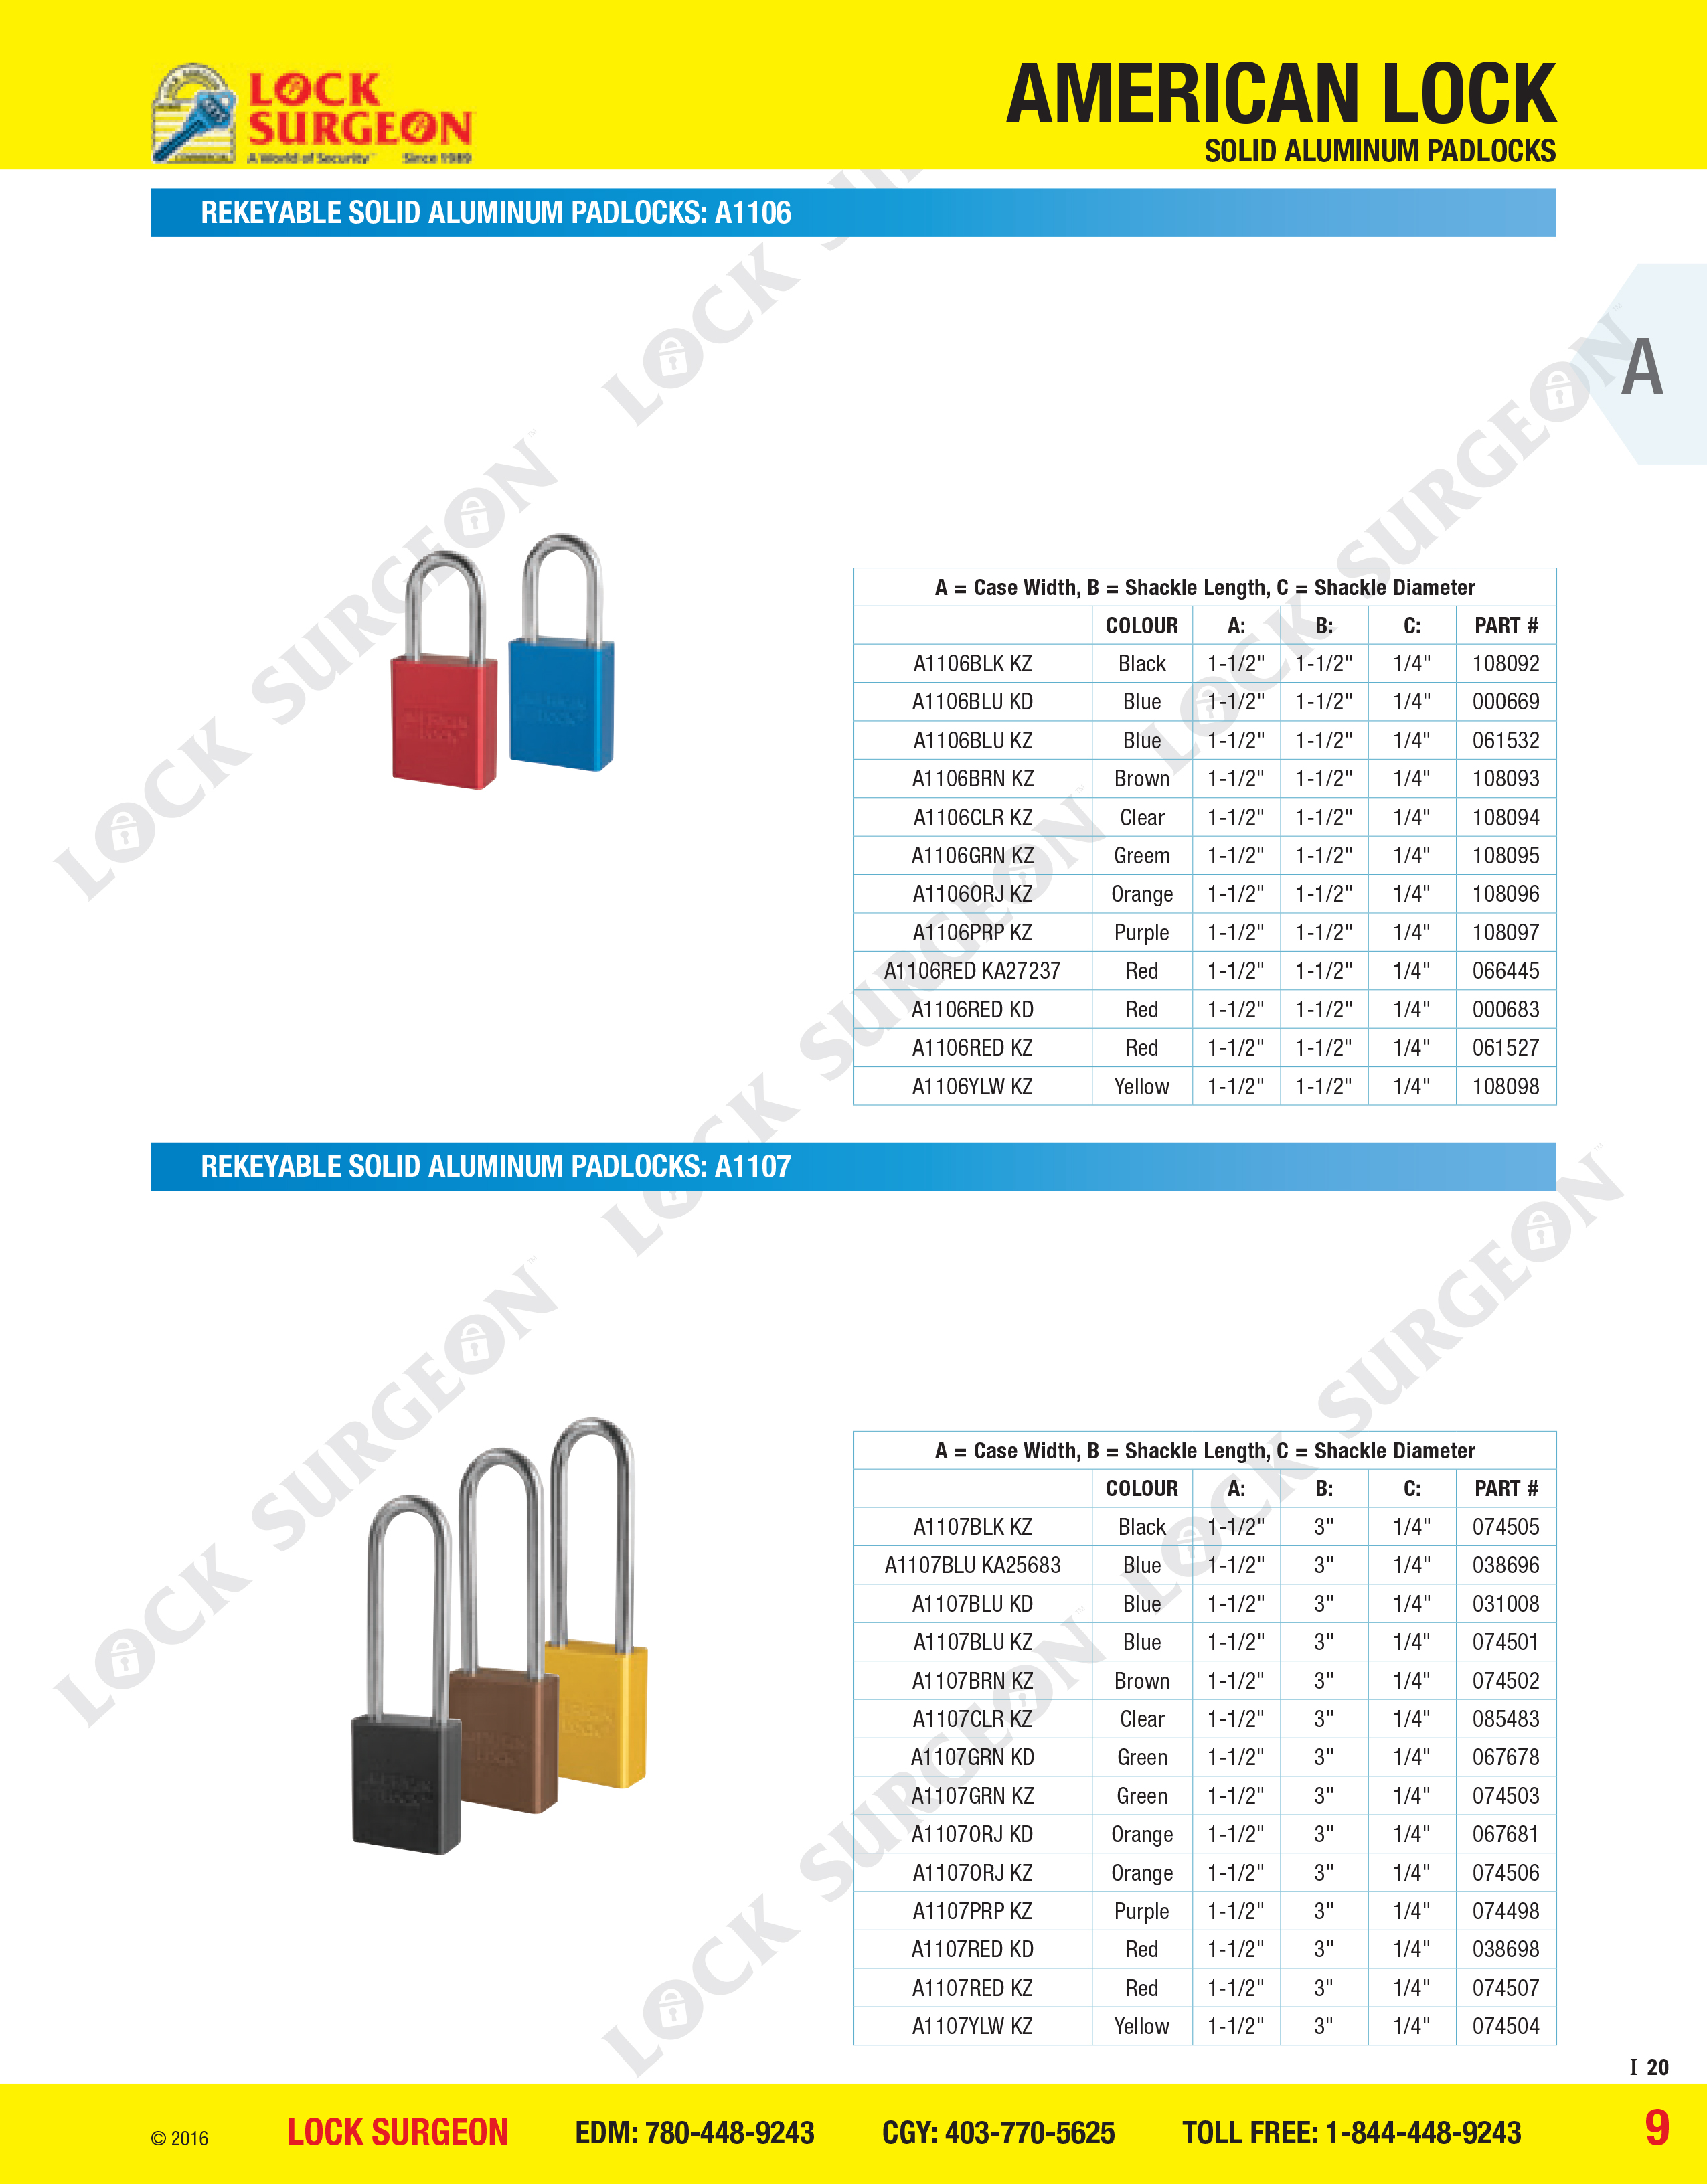 American Lock Rekeyable solid aluminium padlocks A1106 or A1107 series